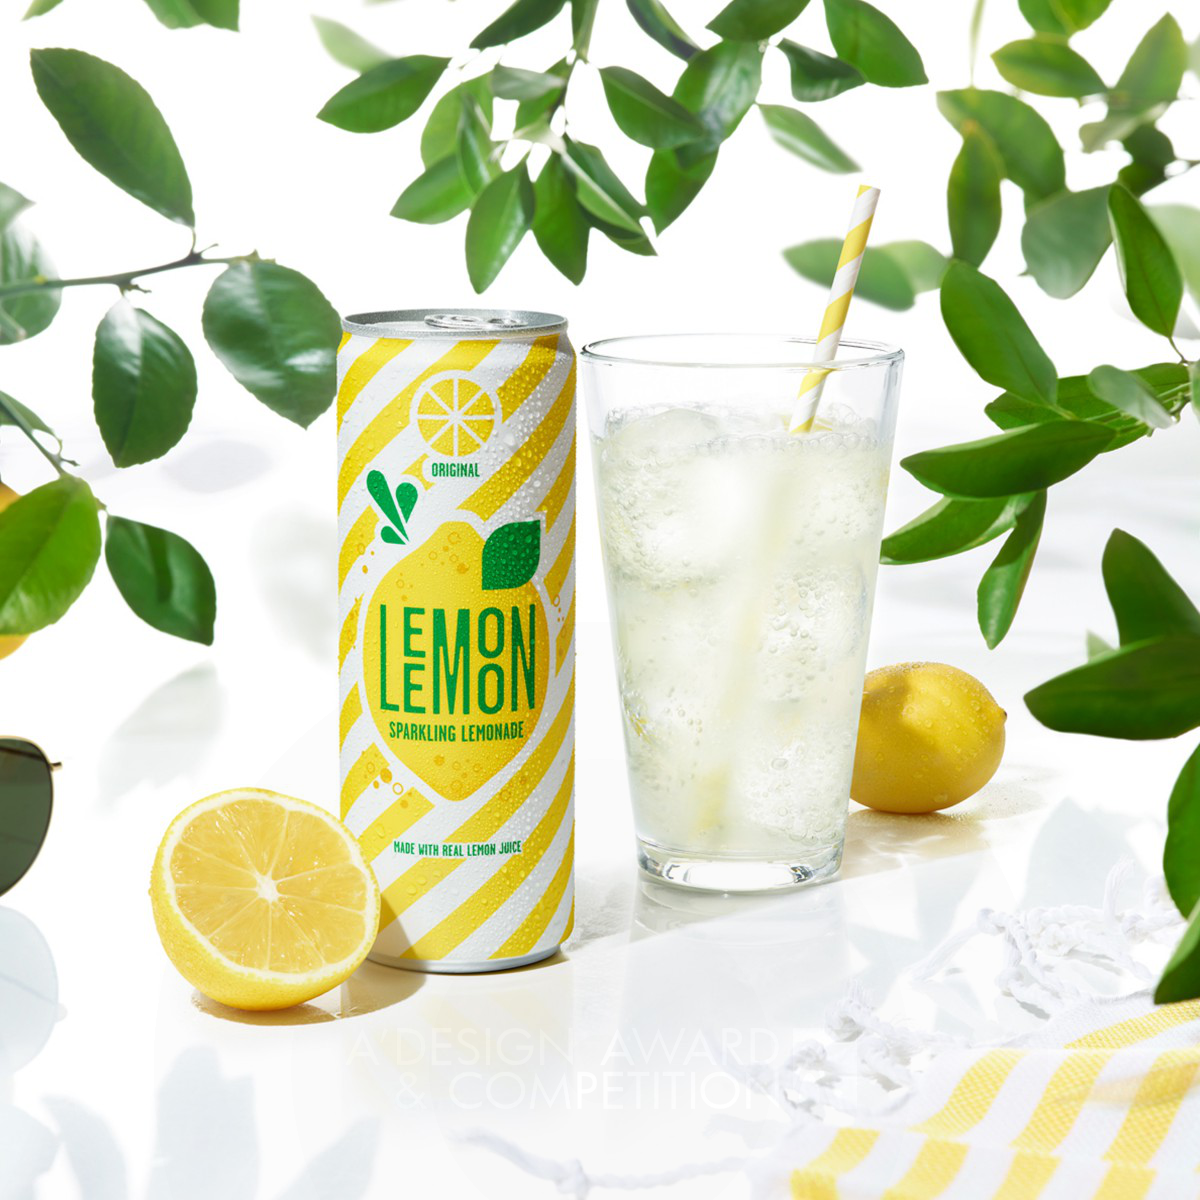 7Up Lemon Lemon Brand Packaging by PepsiCo Design & Innovation